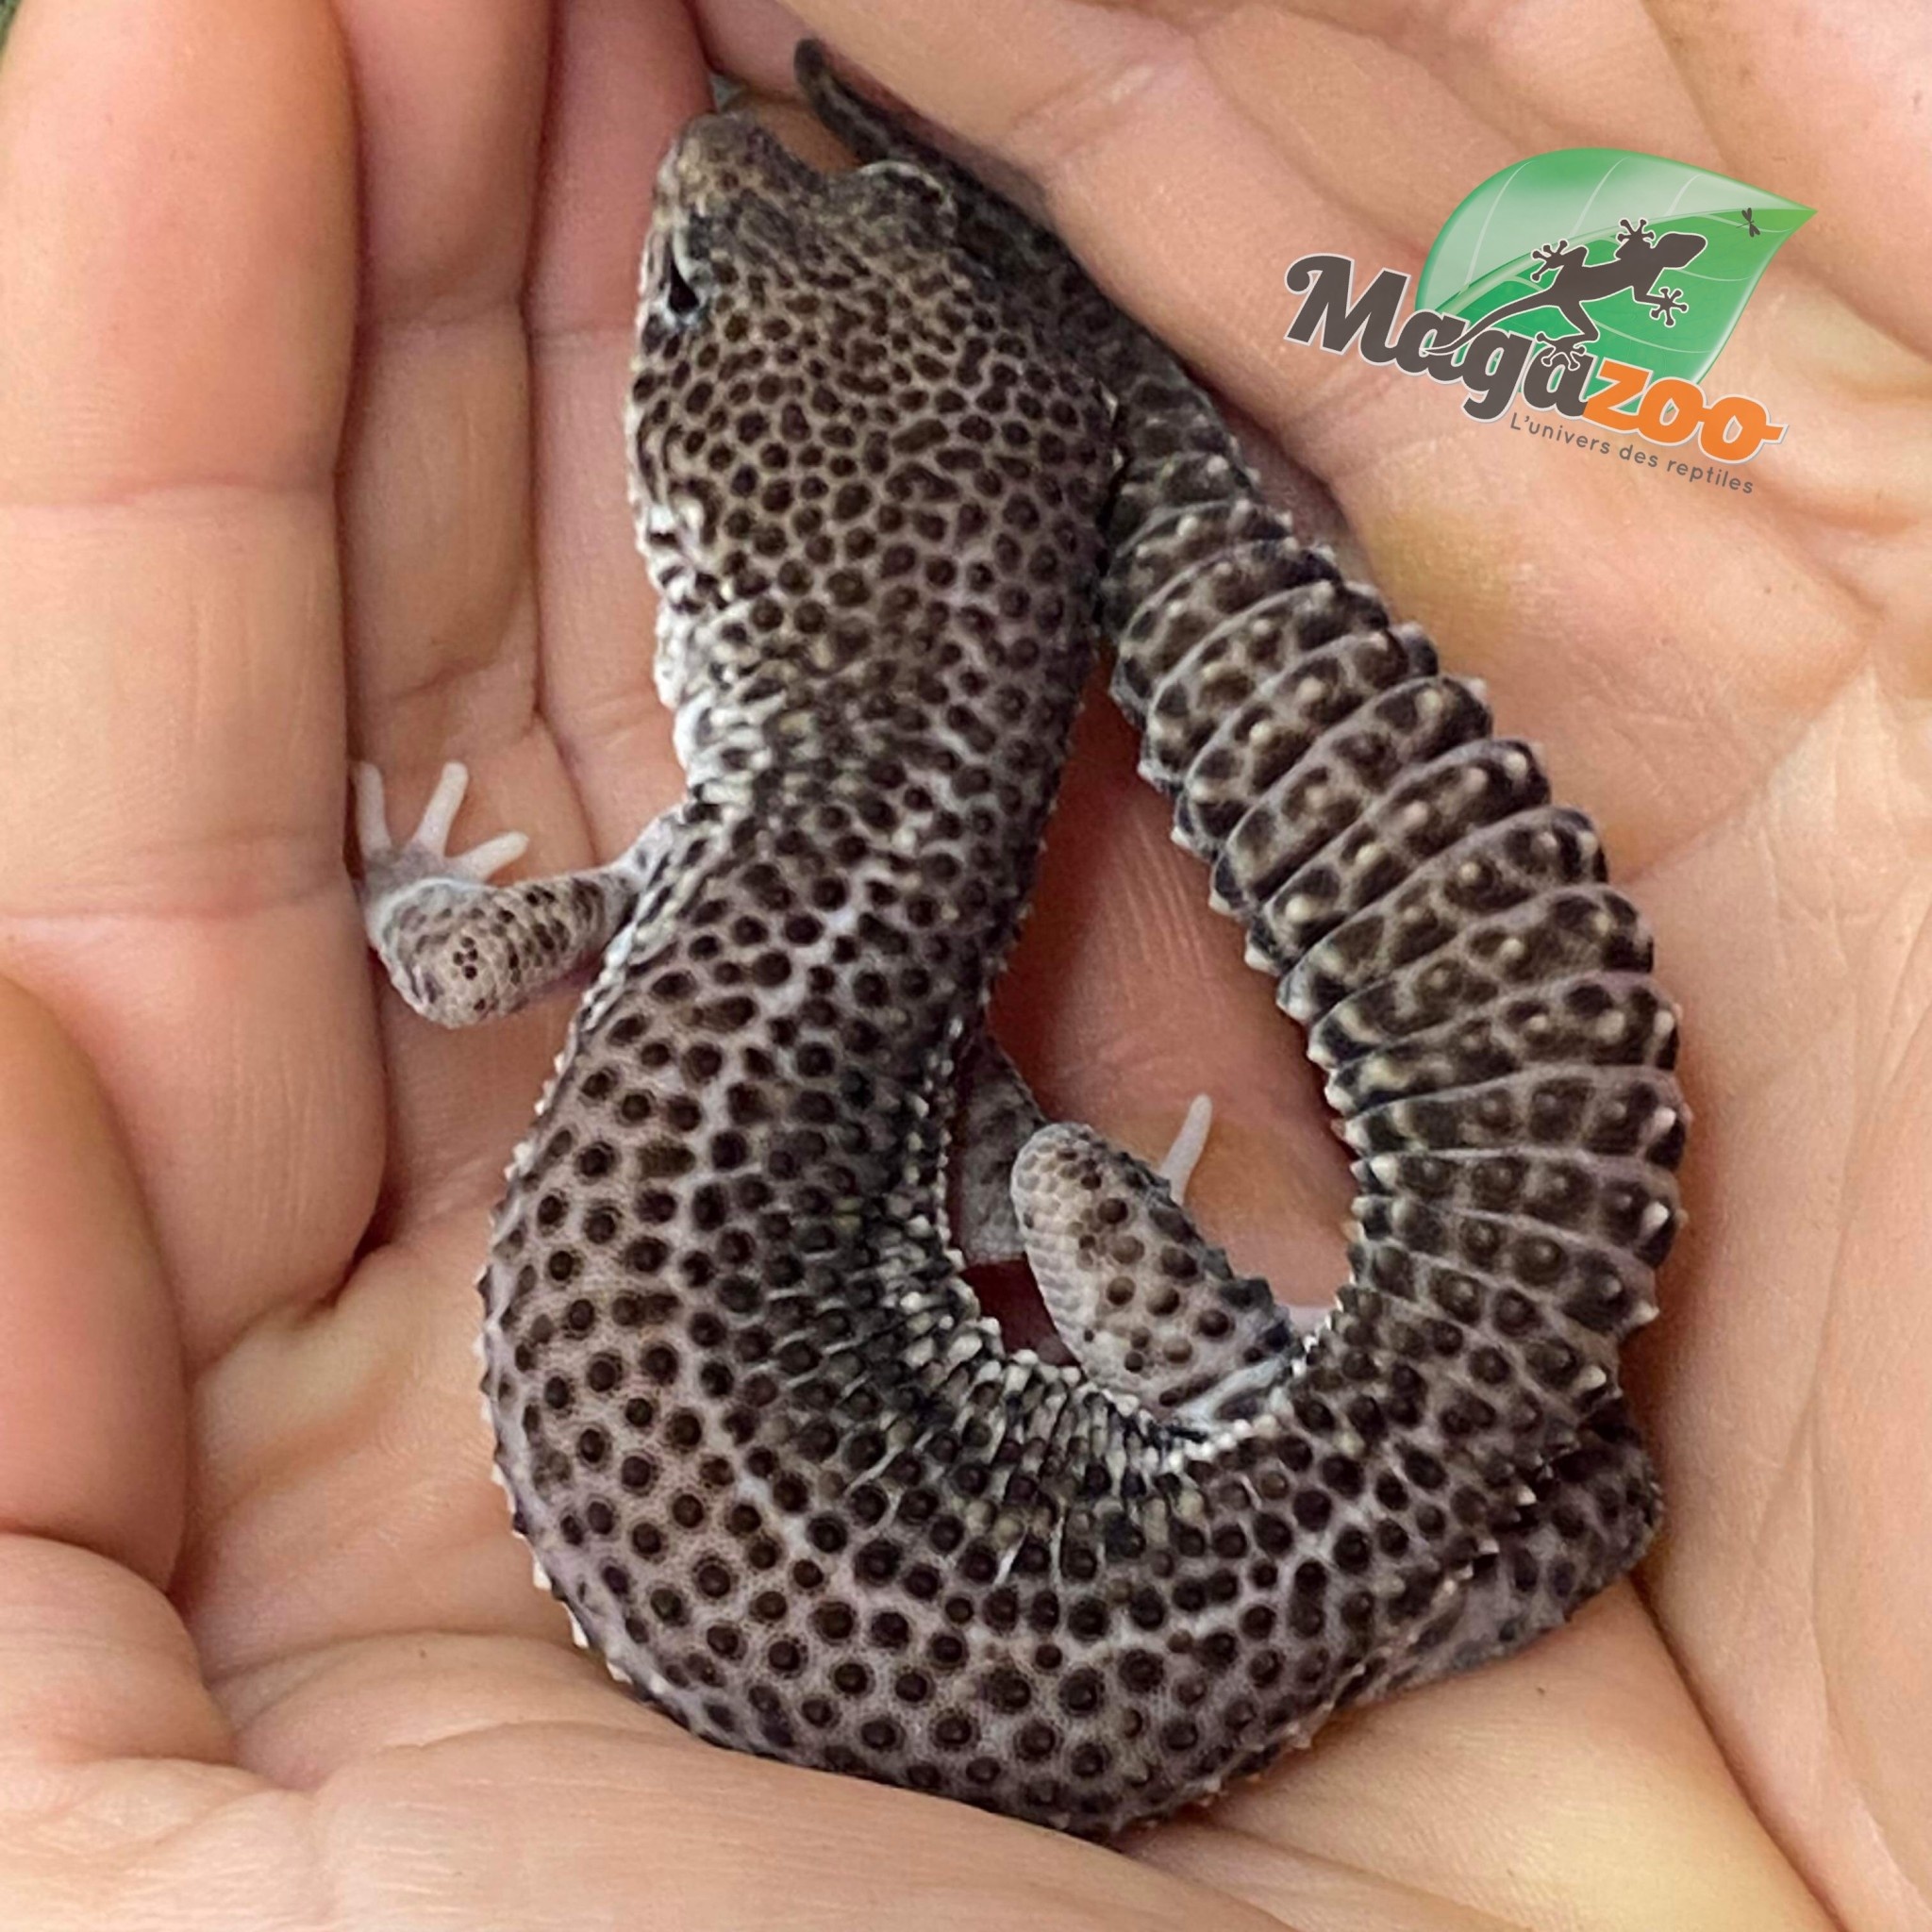 Magazoo Gecko léopard Blacknight total éclipse mâle 12/6/23 #35  (EN COMMANDE SPÉCIALE)